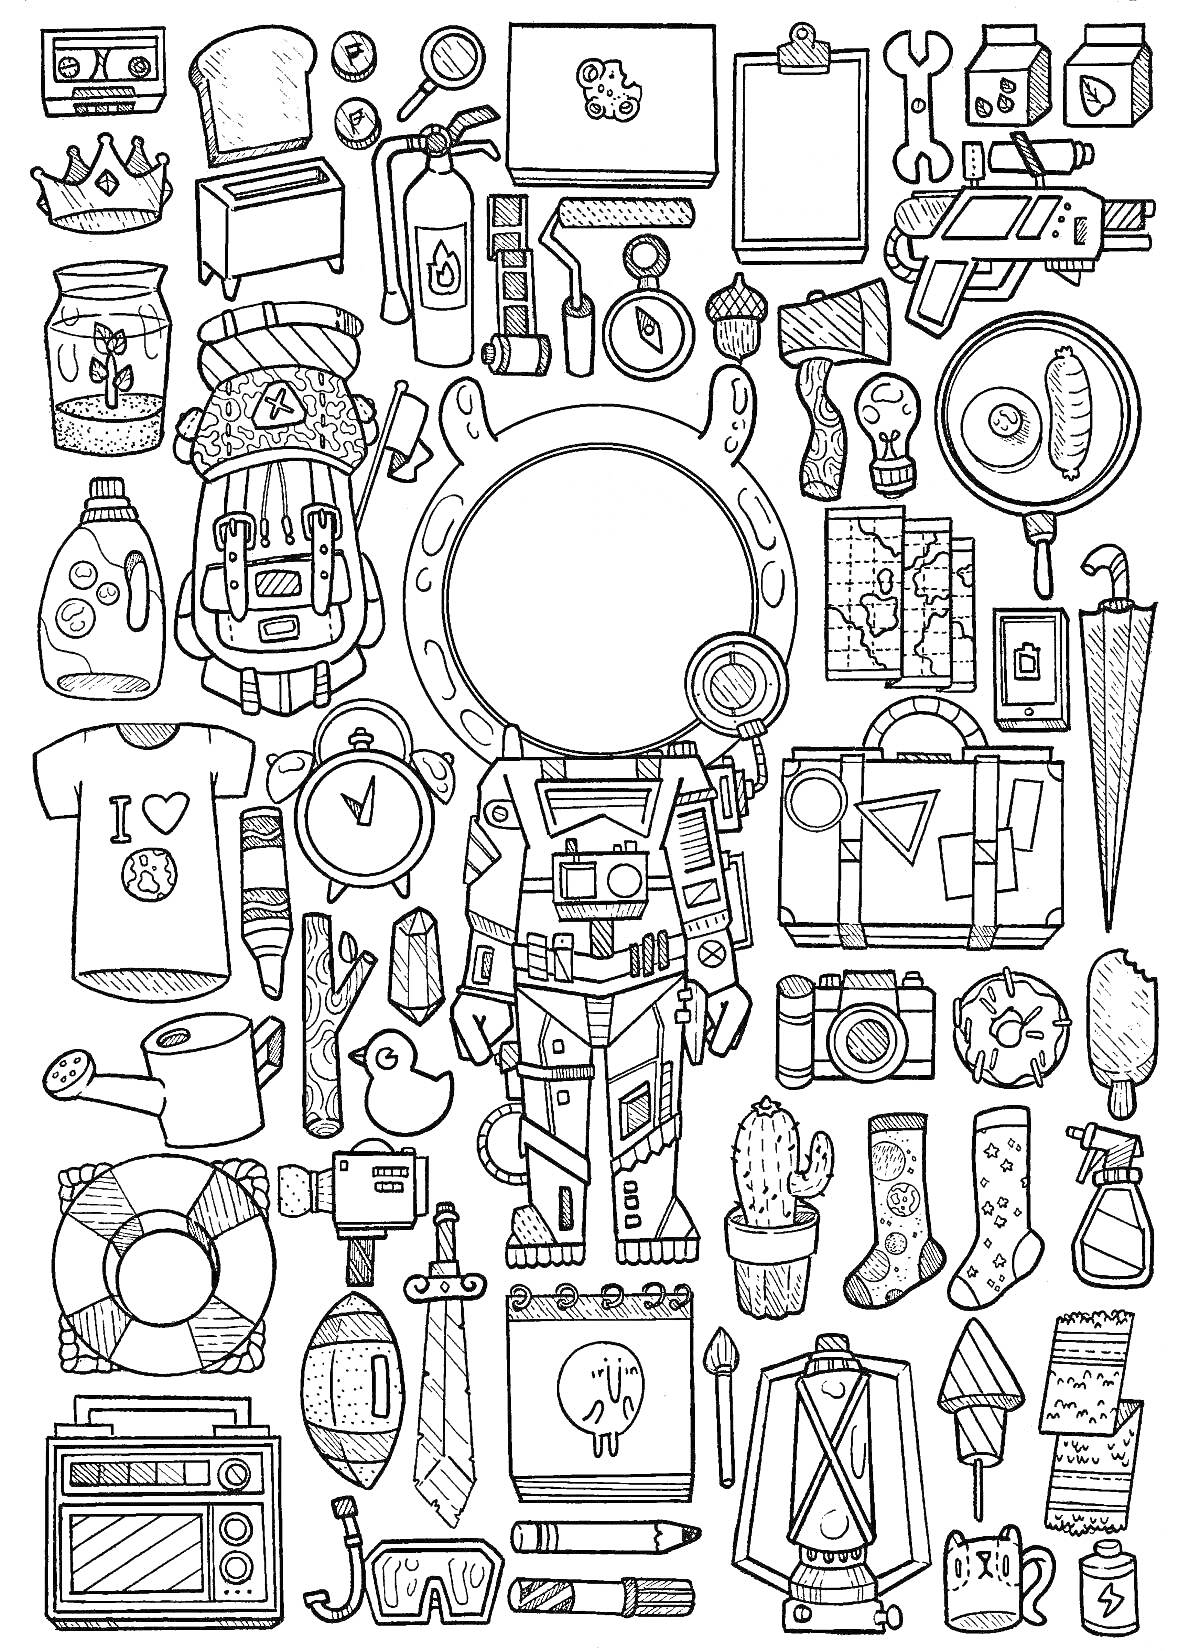 Раскраска Набор объектов: космонавт, рюкзак, часы, инструменты, лампочка, портфель, зонт, фотоаппарат, чайник, кактус, носки, вентилятор и другие предметы